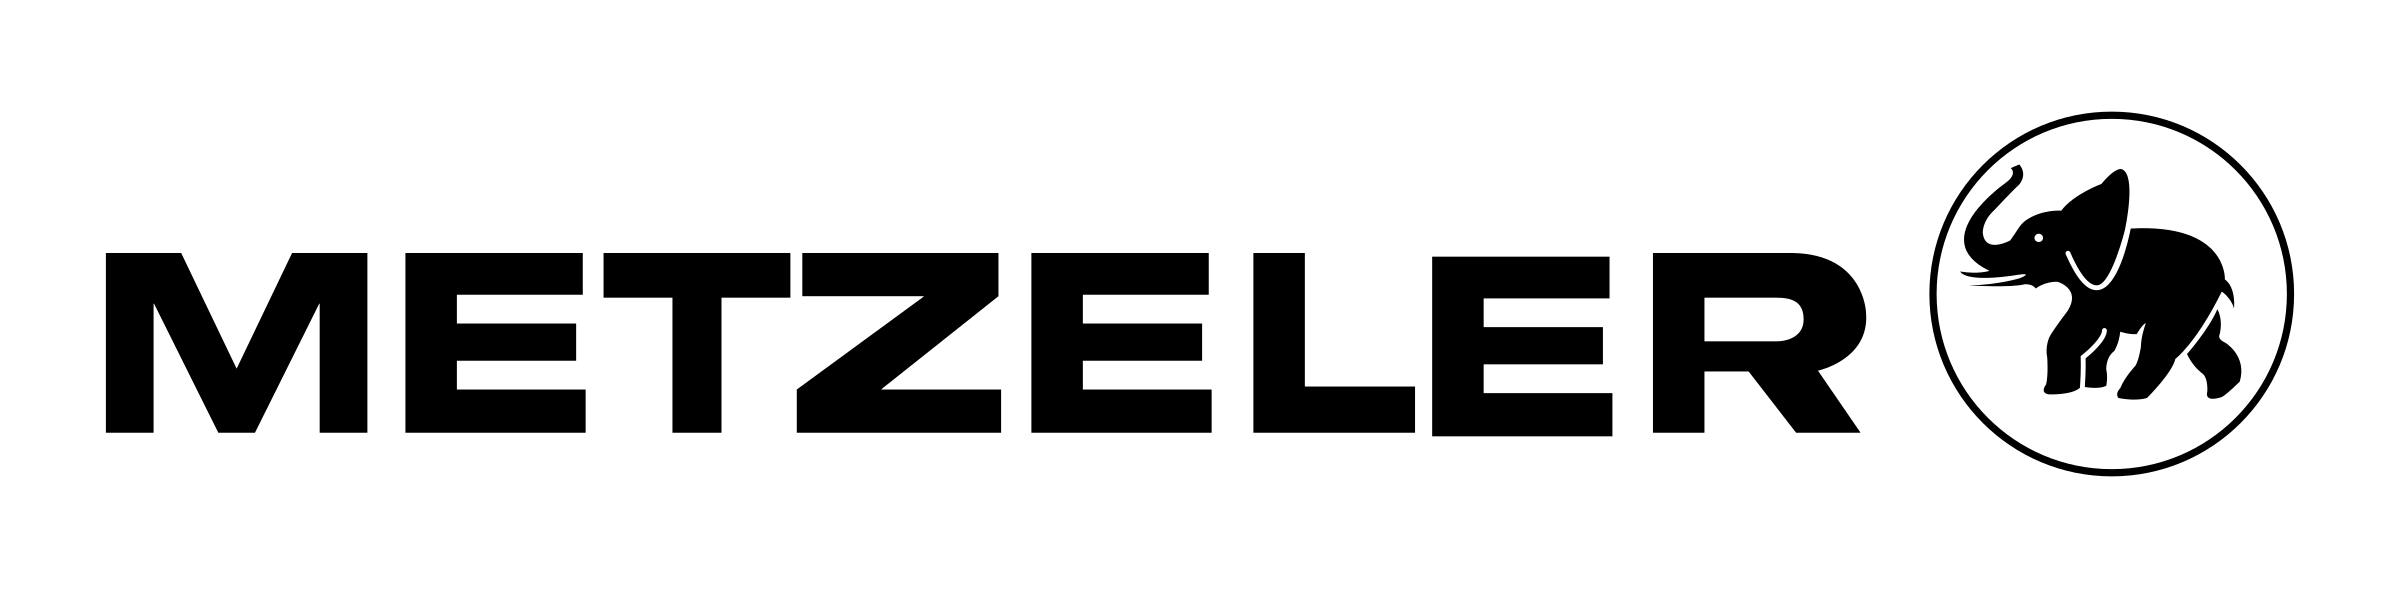 metzeler-logo-png-transparent-e1543563312110.png